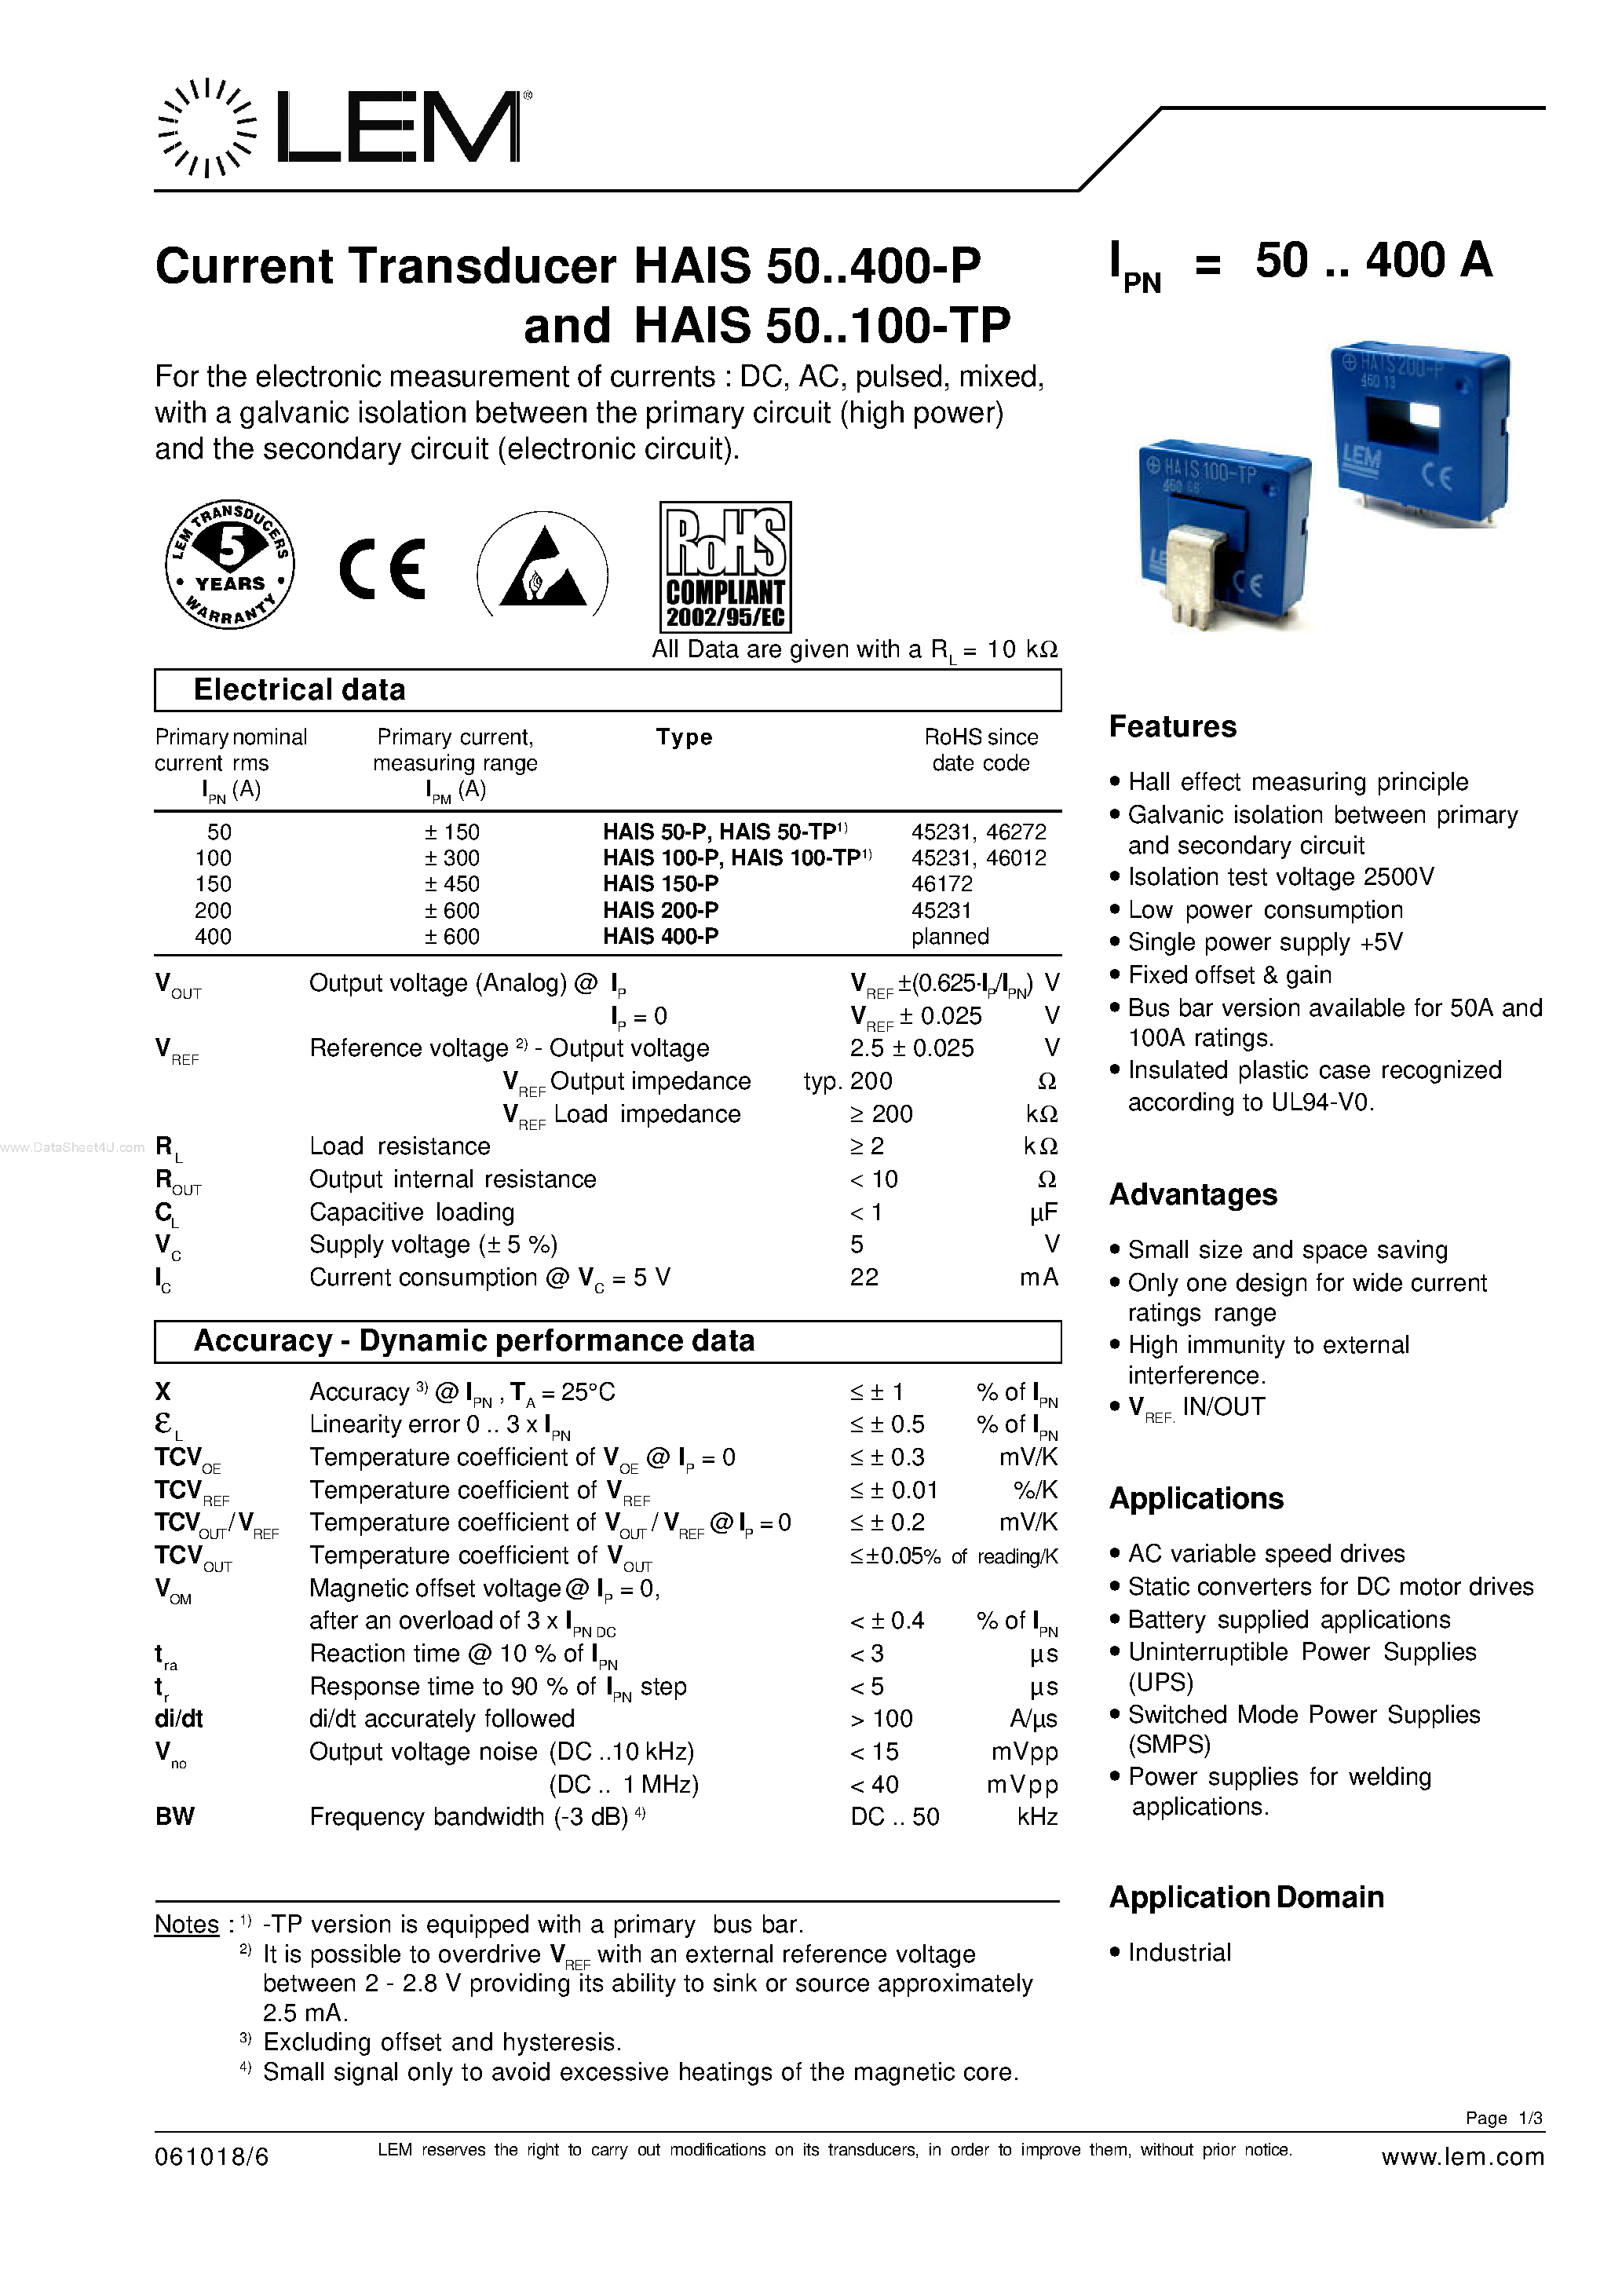 Даташит HAIS100-P - (HAISxxx-P) Current Transducer страница 1